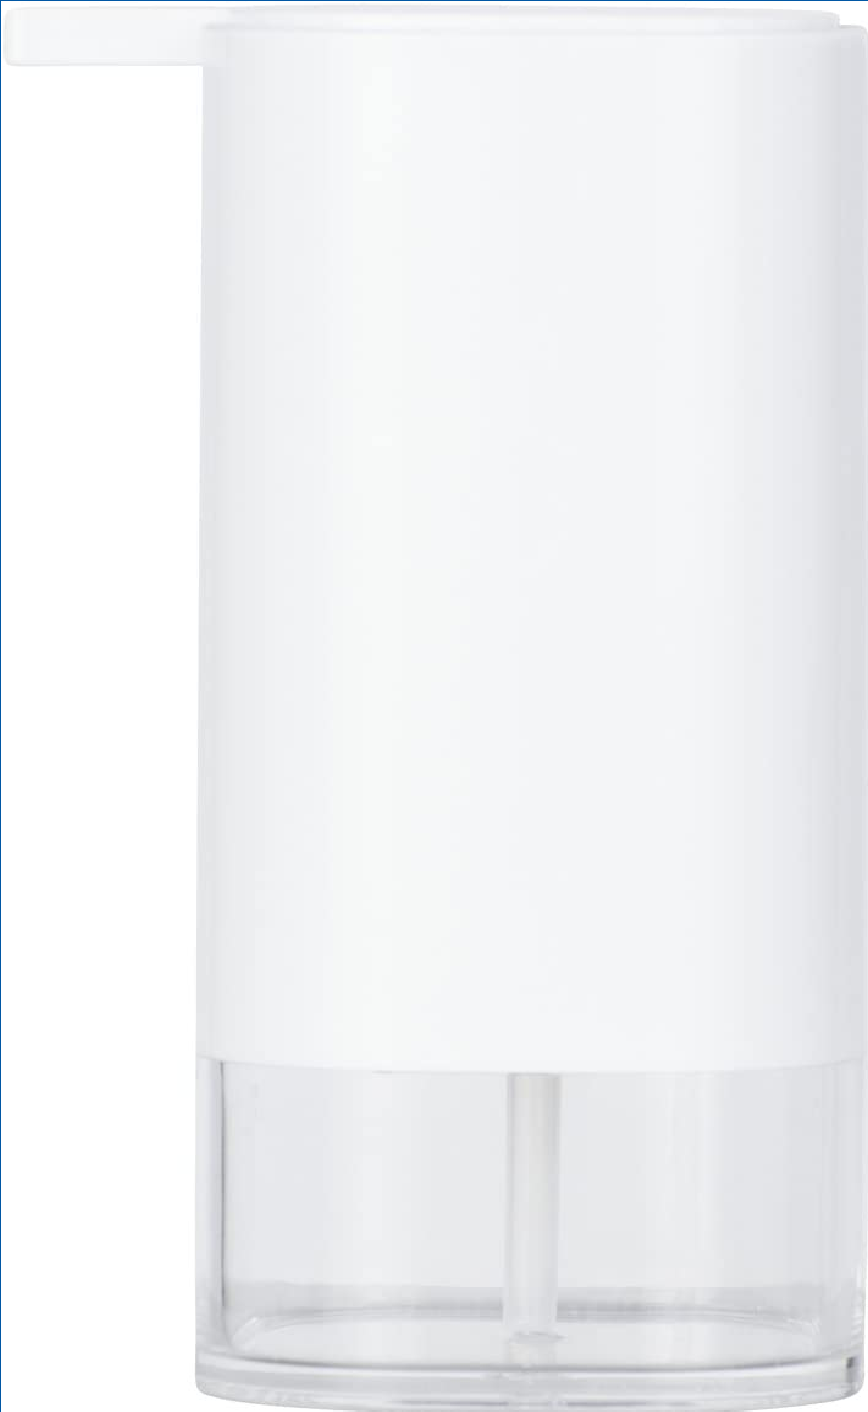 Seifenspender Oria Weiß - Flüssigseifen-Spender, Spülmittel-Spender Fassungsvermögen: 0.36 l, Acryl, 7.5 x 16 x 9.5 cm, Transparent